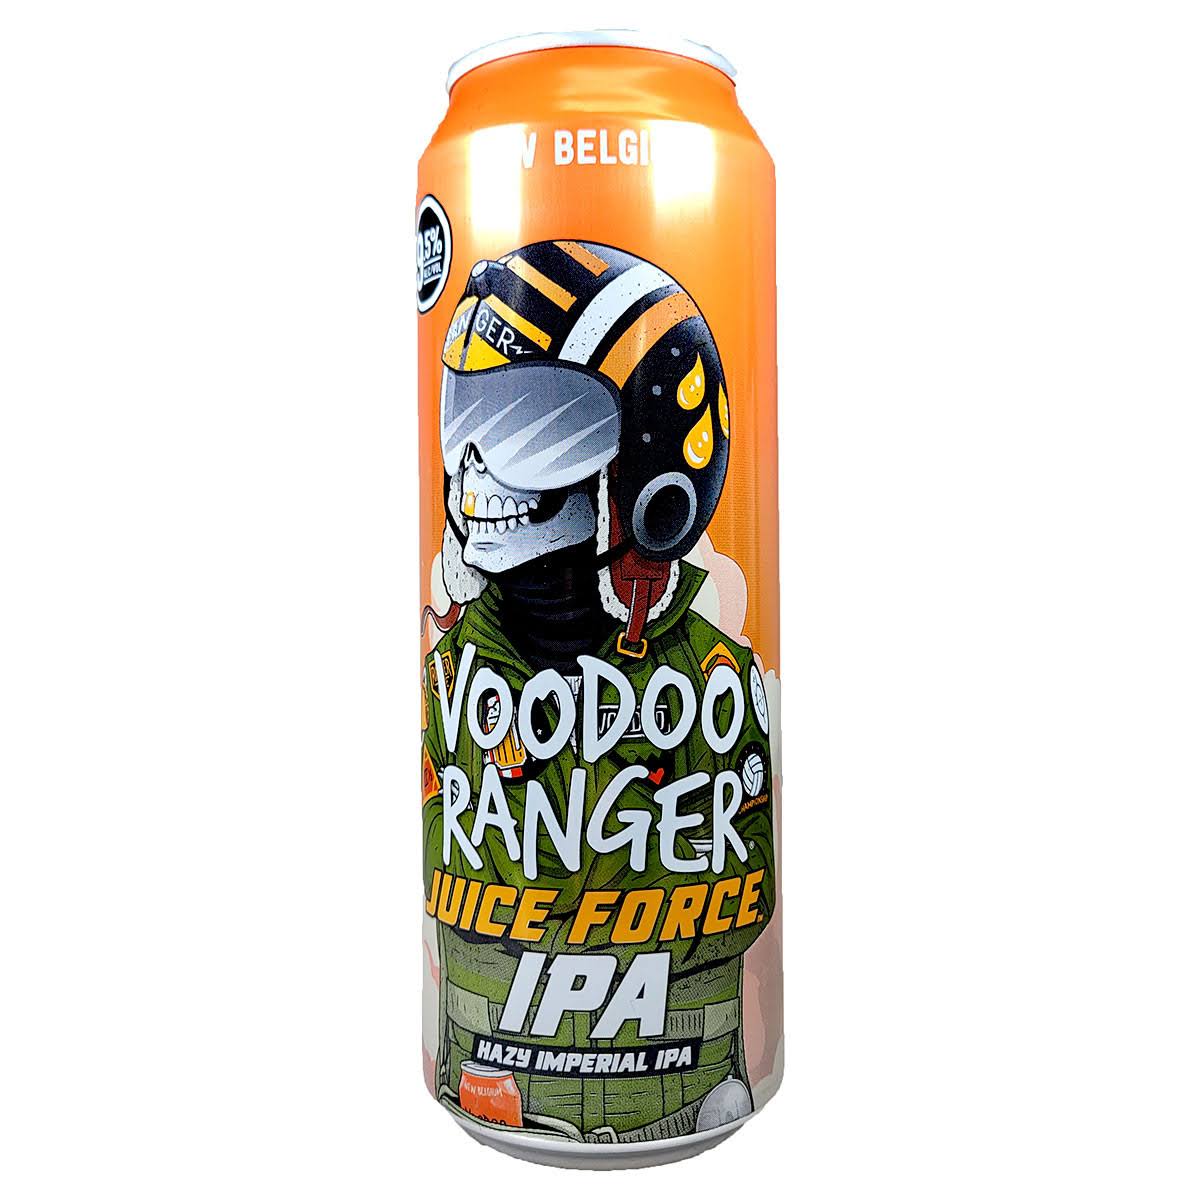 New Belgium Voodoo Ranger Beer, Hazy Imperial IPA, Juice Force - 19.2 fl oz